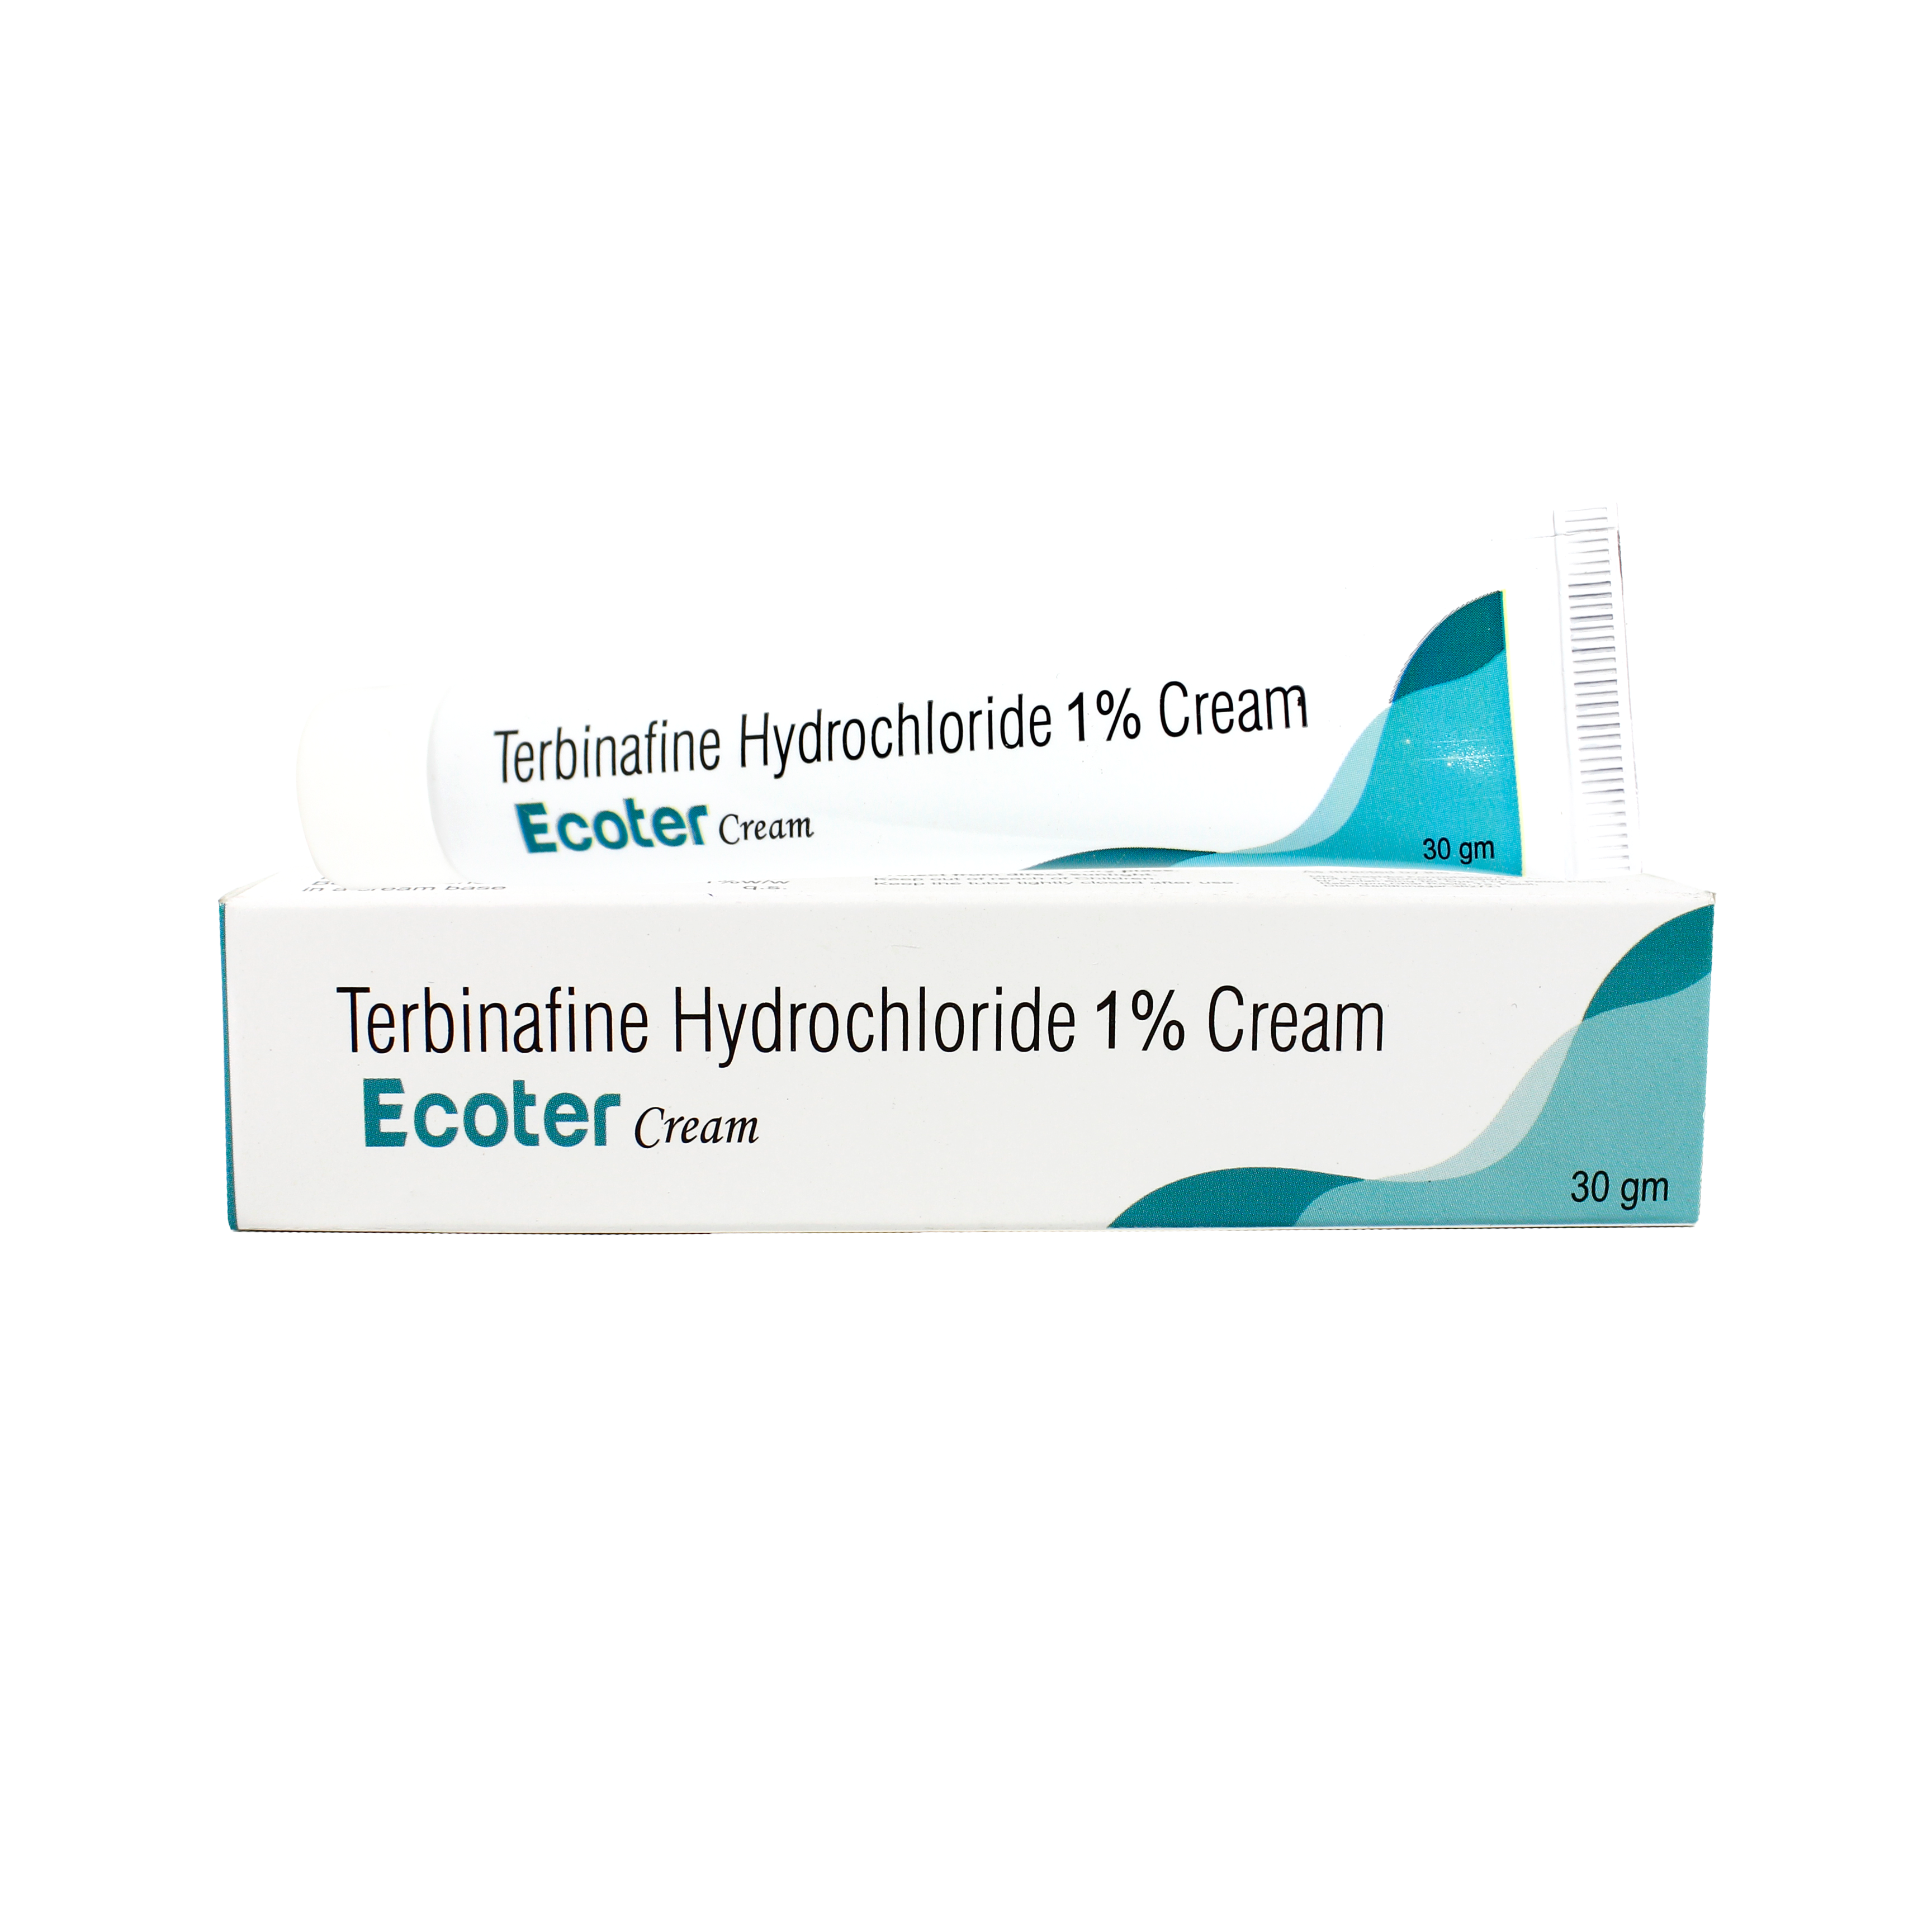 Terbinafine HCI Cream Manufacturer & Wholesaler Supplier